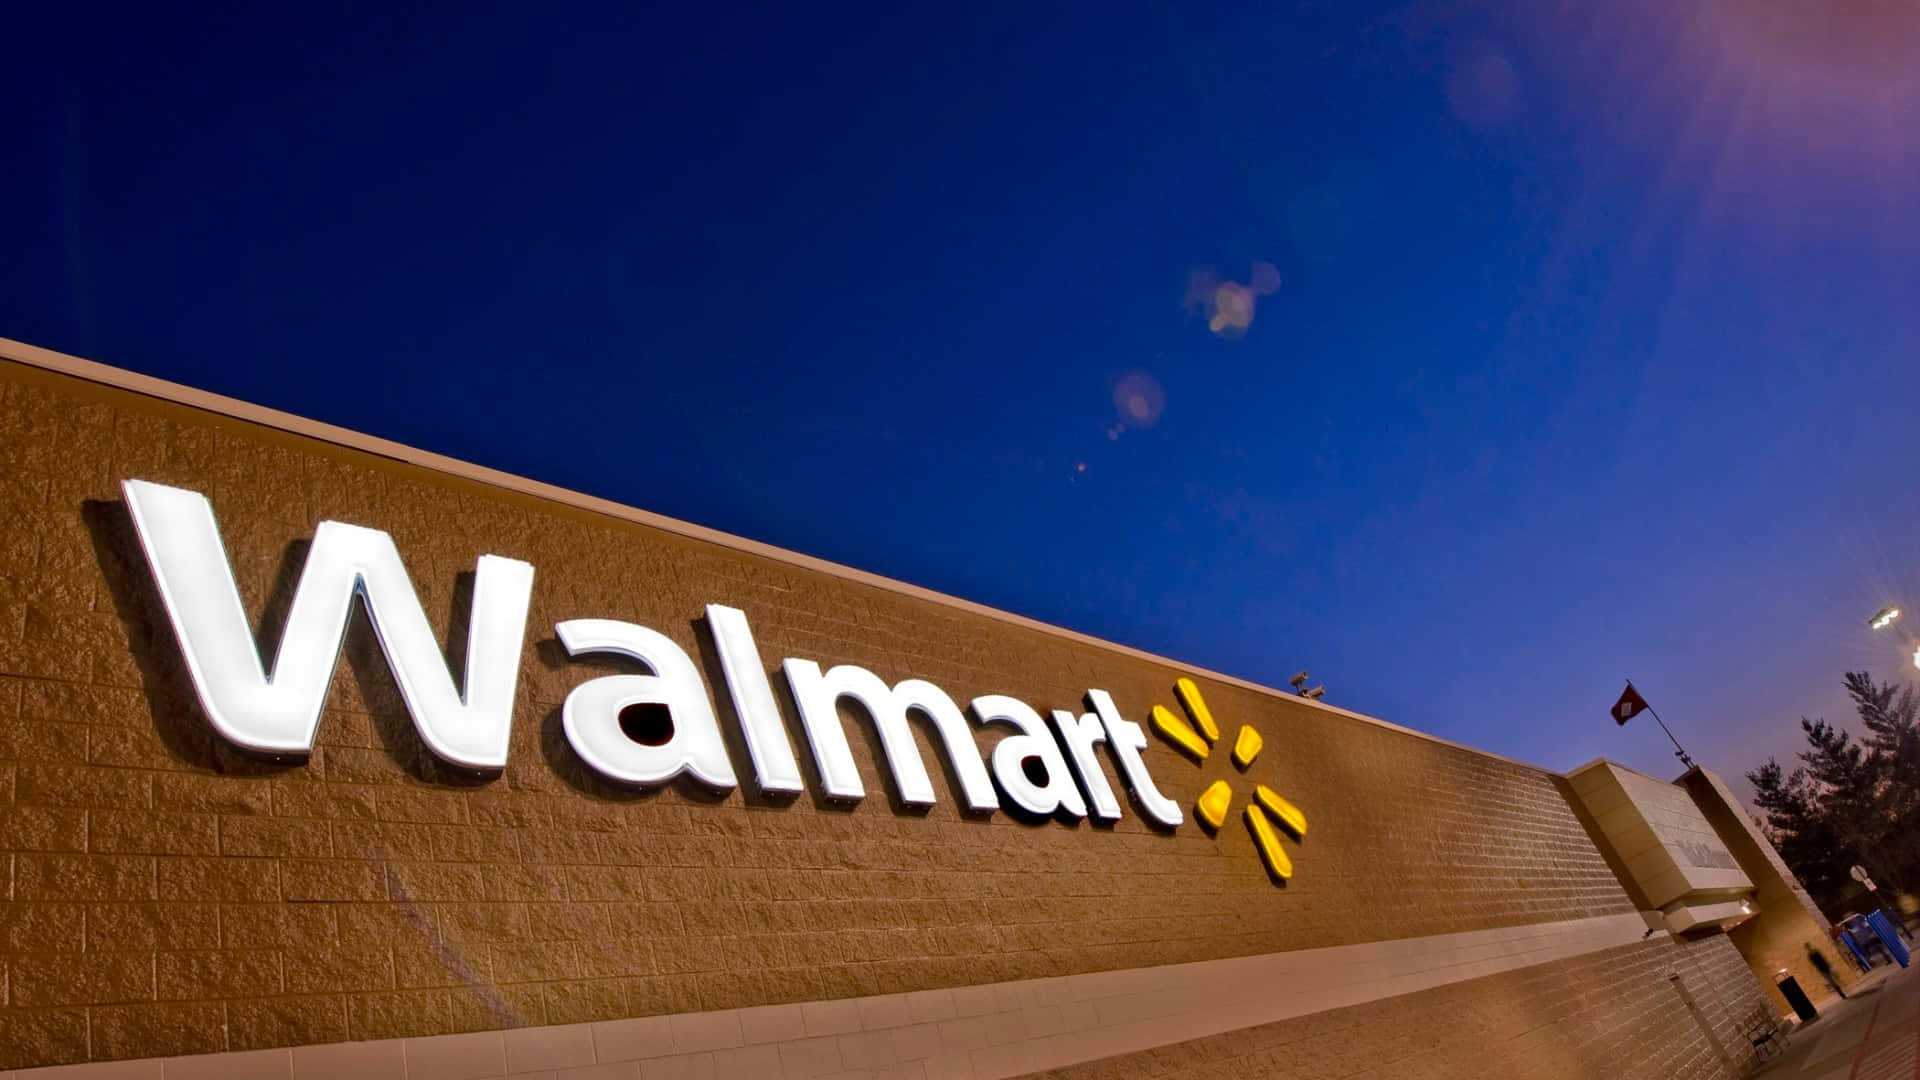 Ilnuovo Logo Di Walmart Viene Mostrato Di Notte.